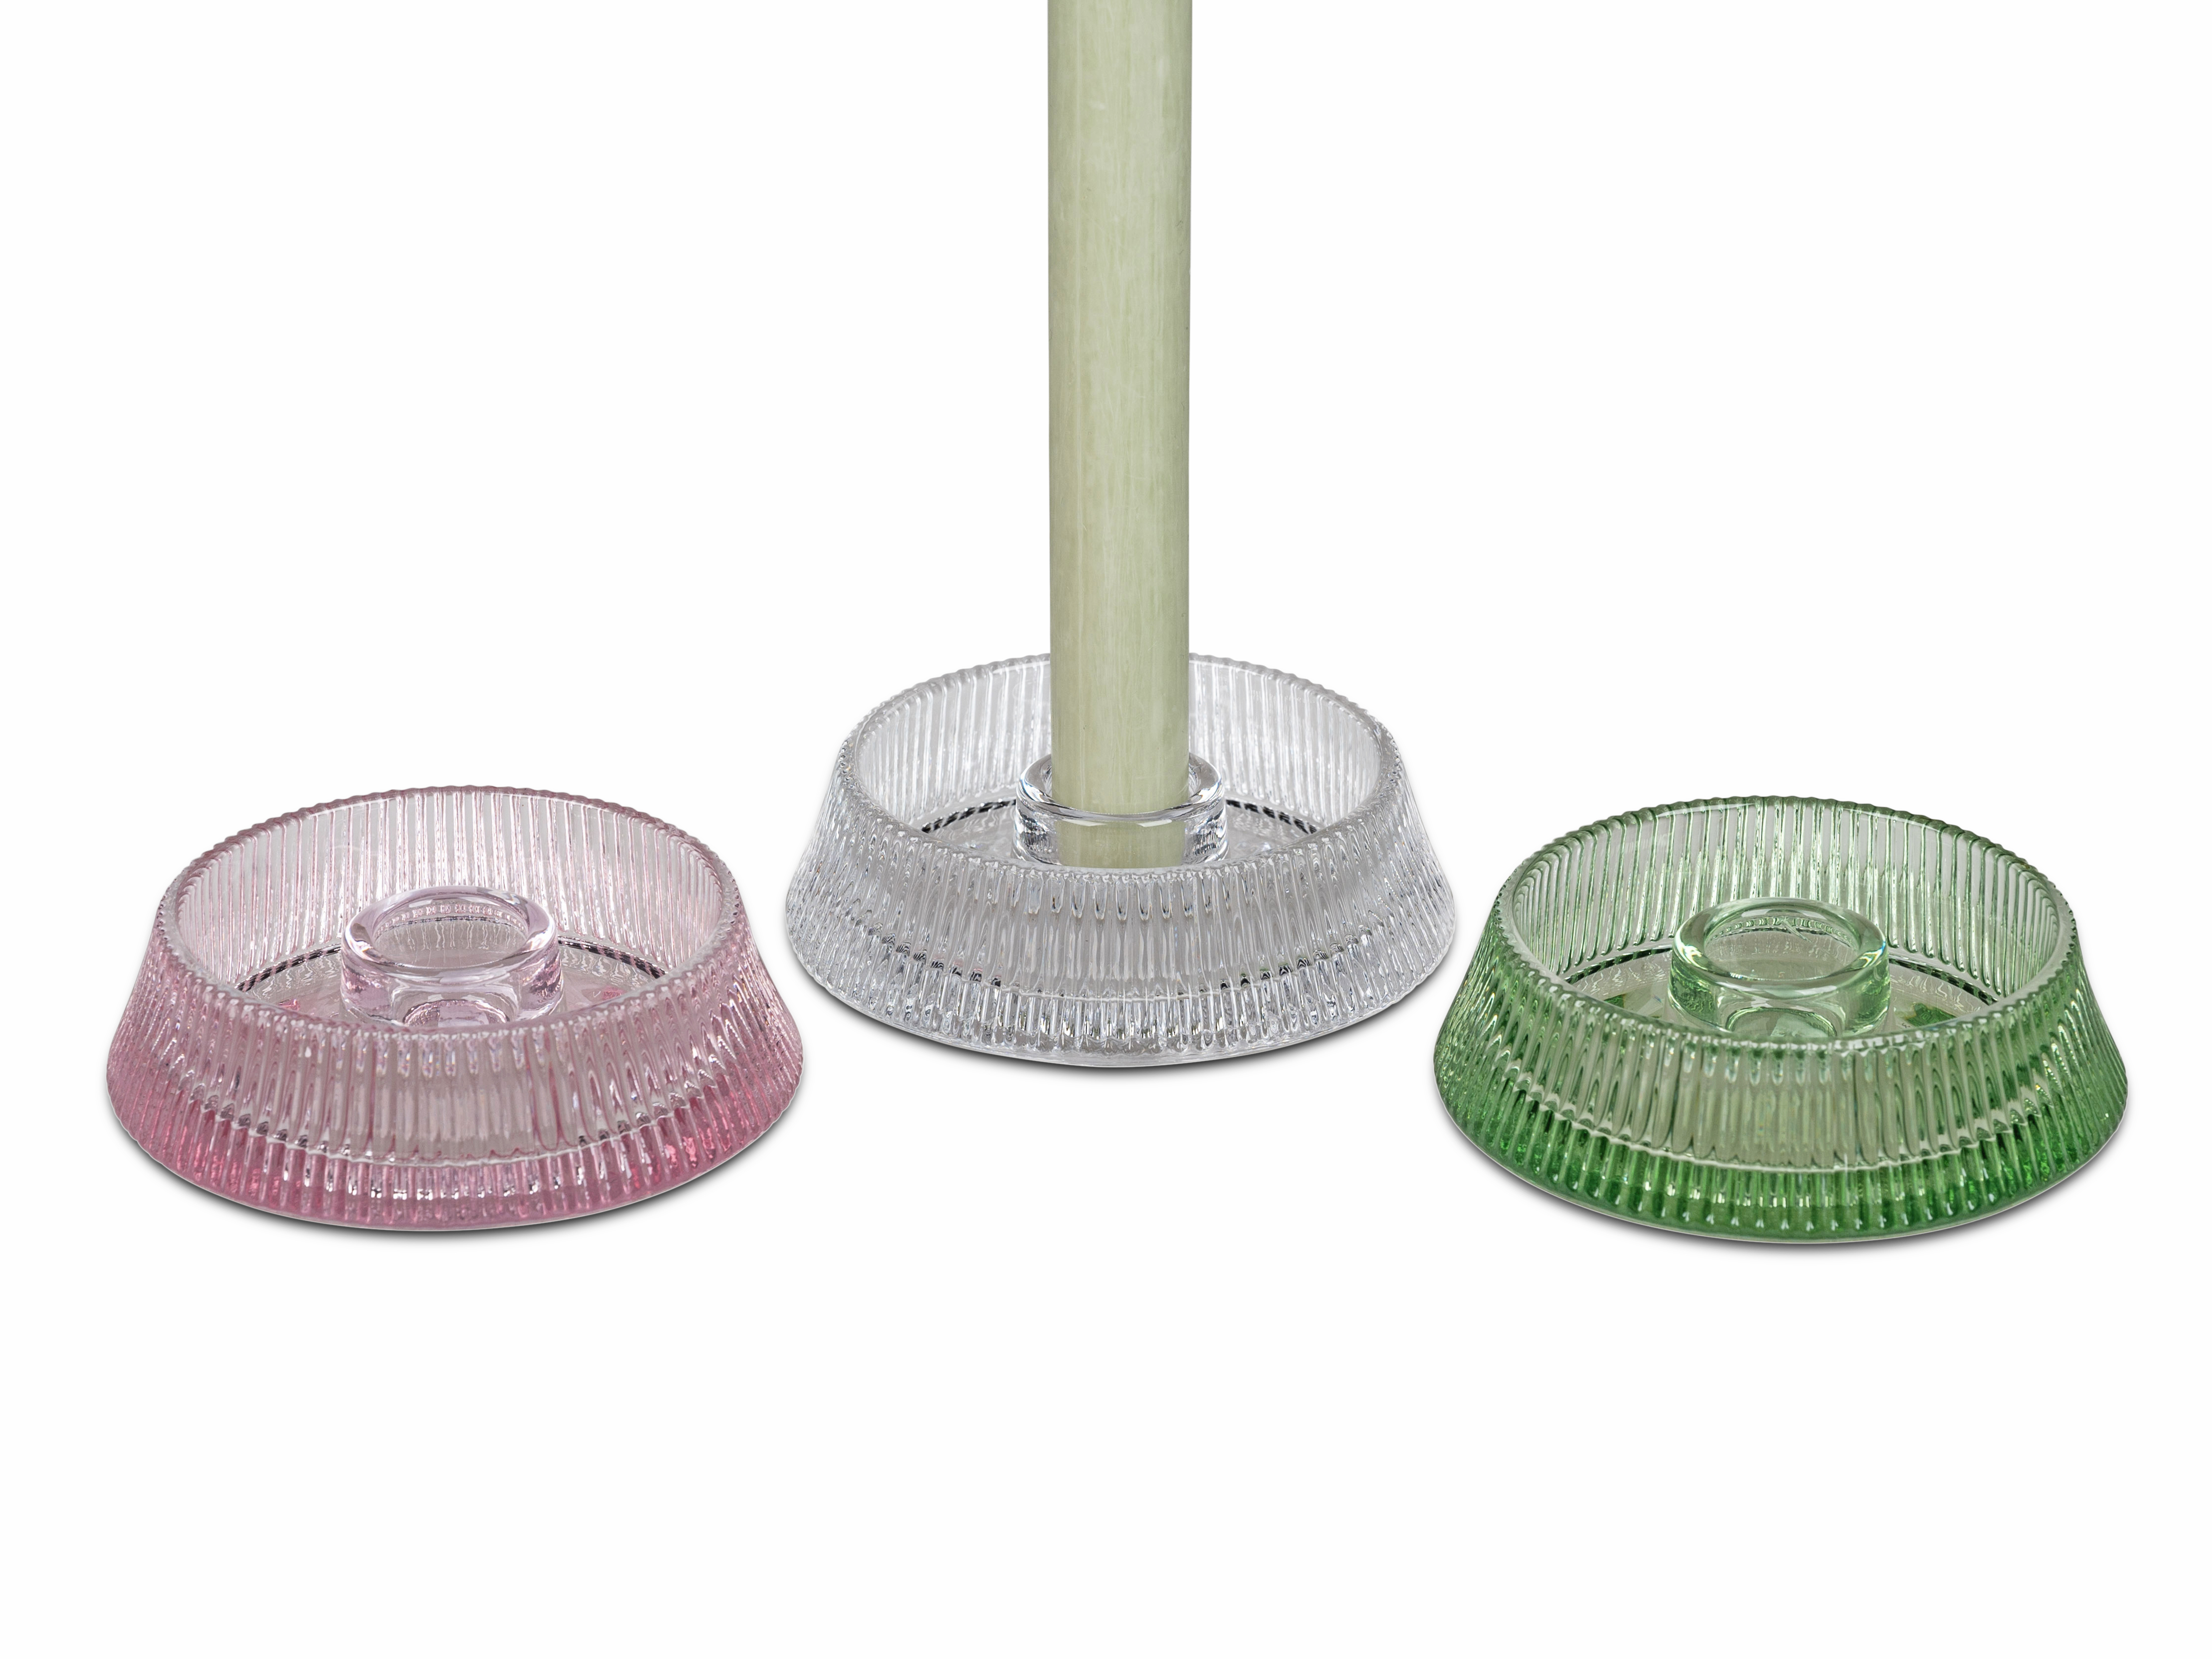 Leuchter Ø 11cm flach grün für Stabkerzen Kerzenleuchter Teelichthalter aus Glas formano F24